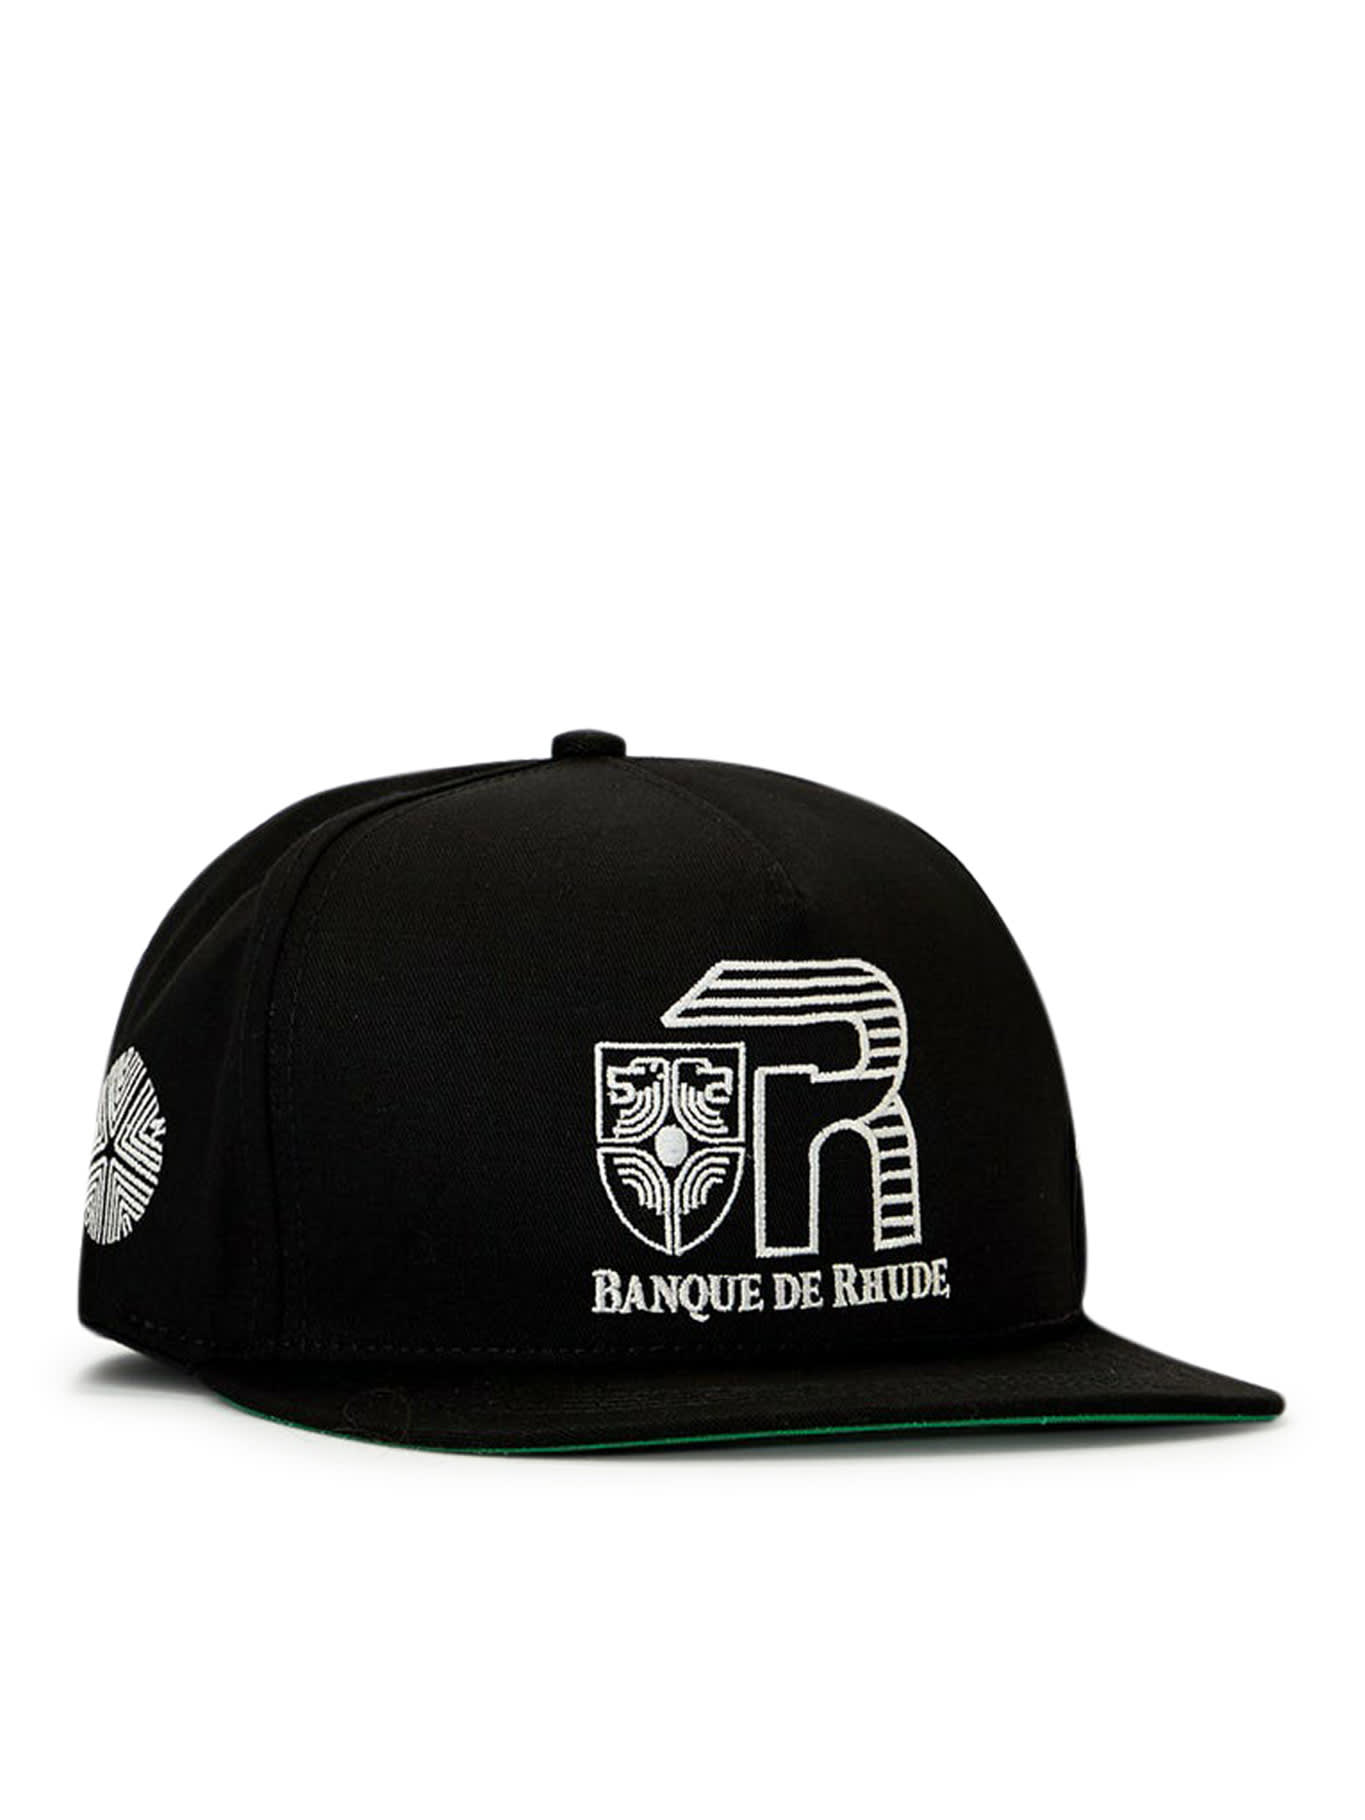 Rhude Banque De Hat